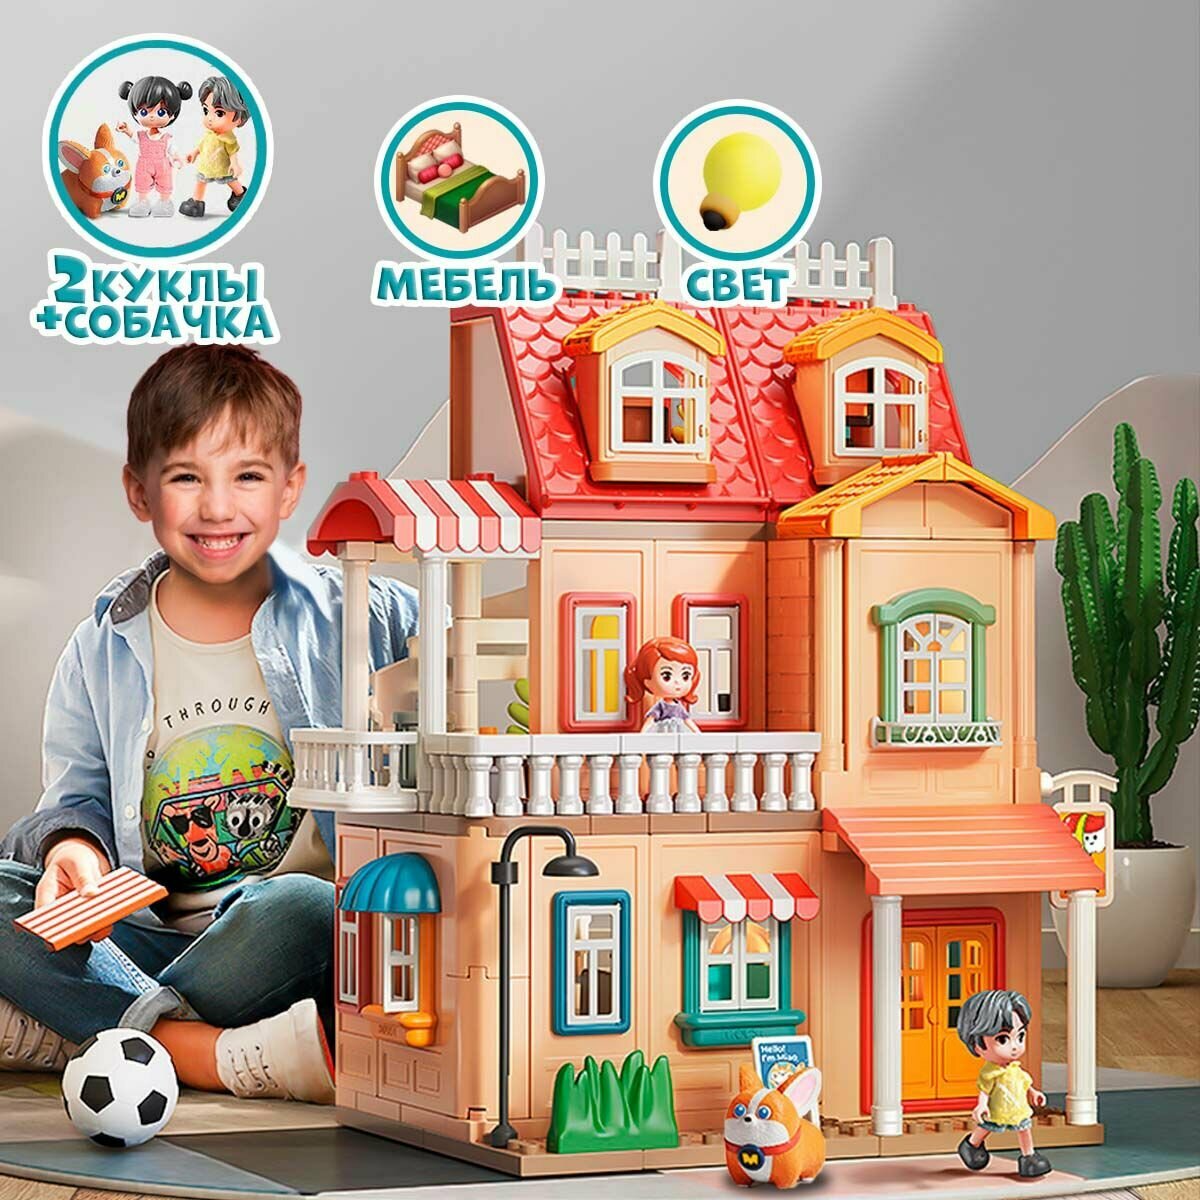 Кукольный домик с мебелью, куклами и подсветкой WiMi, большой игровой набор, 246 деталей